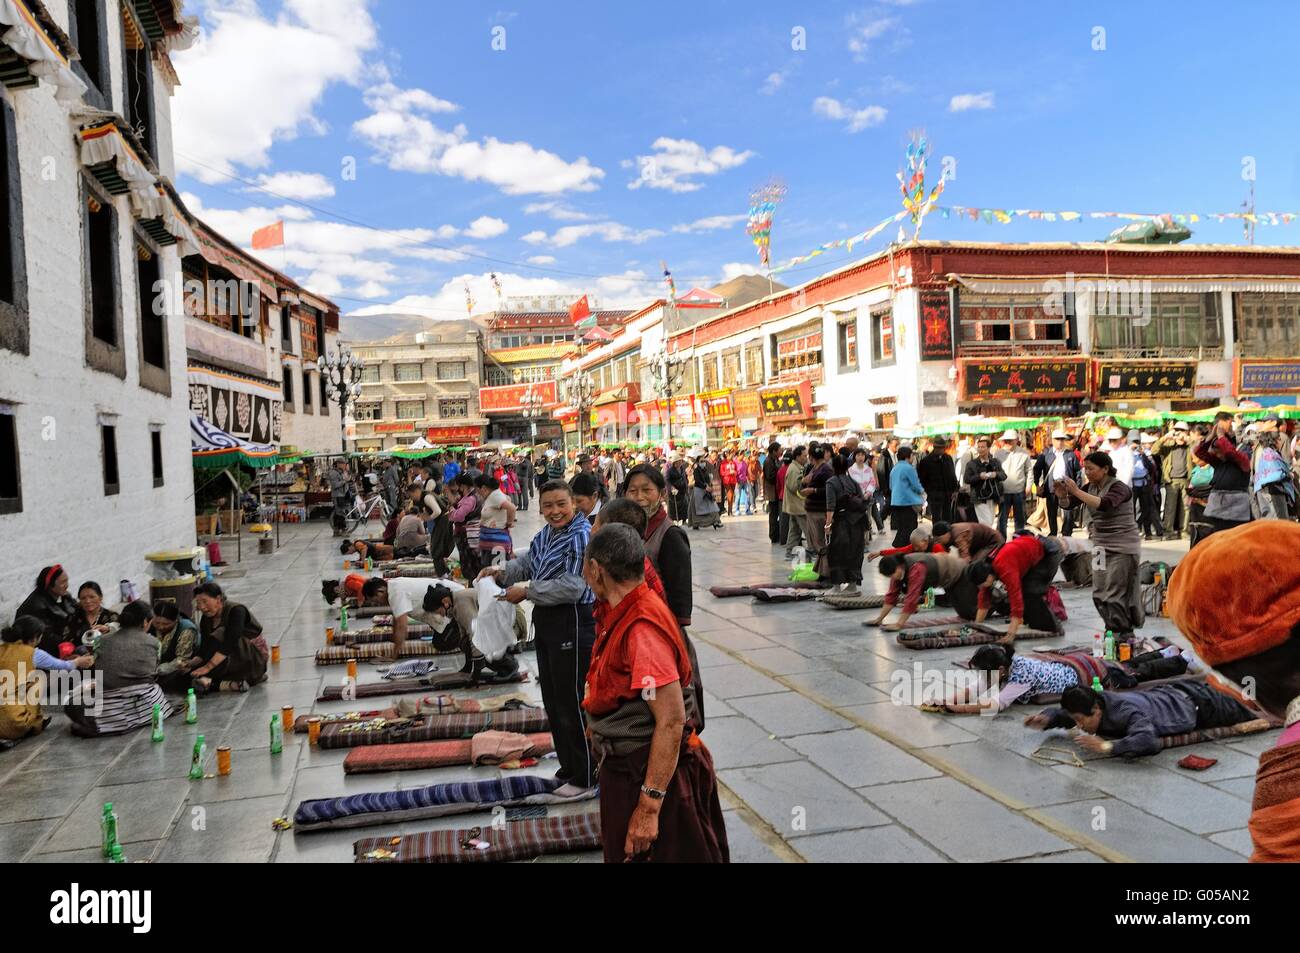 Prier à la Temple de Jokhang à Lhassa Tibet Chine Banque D'Images